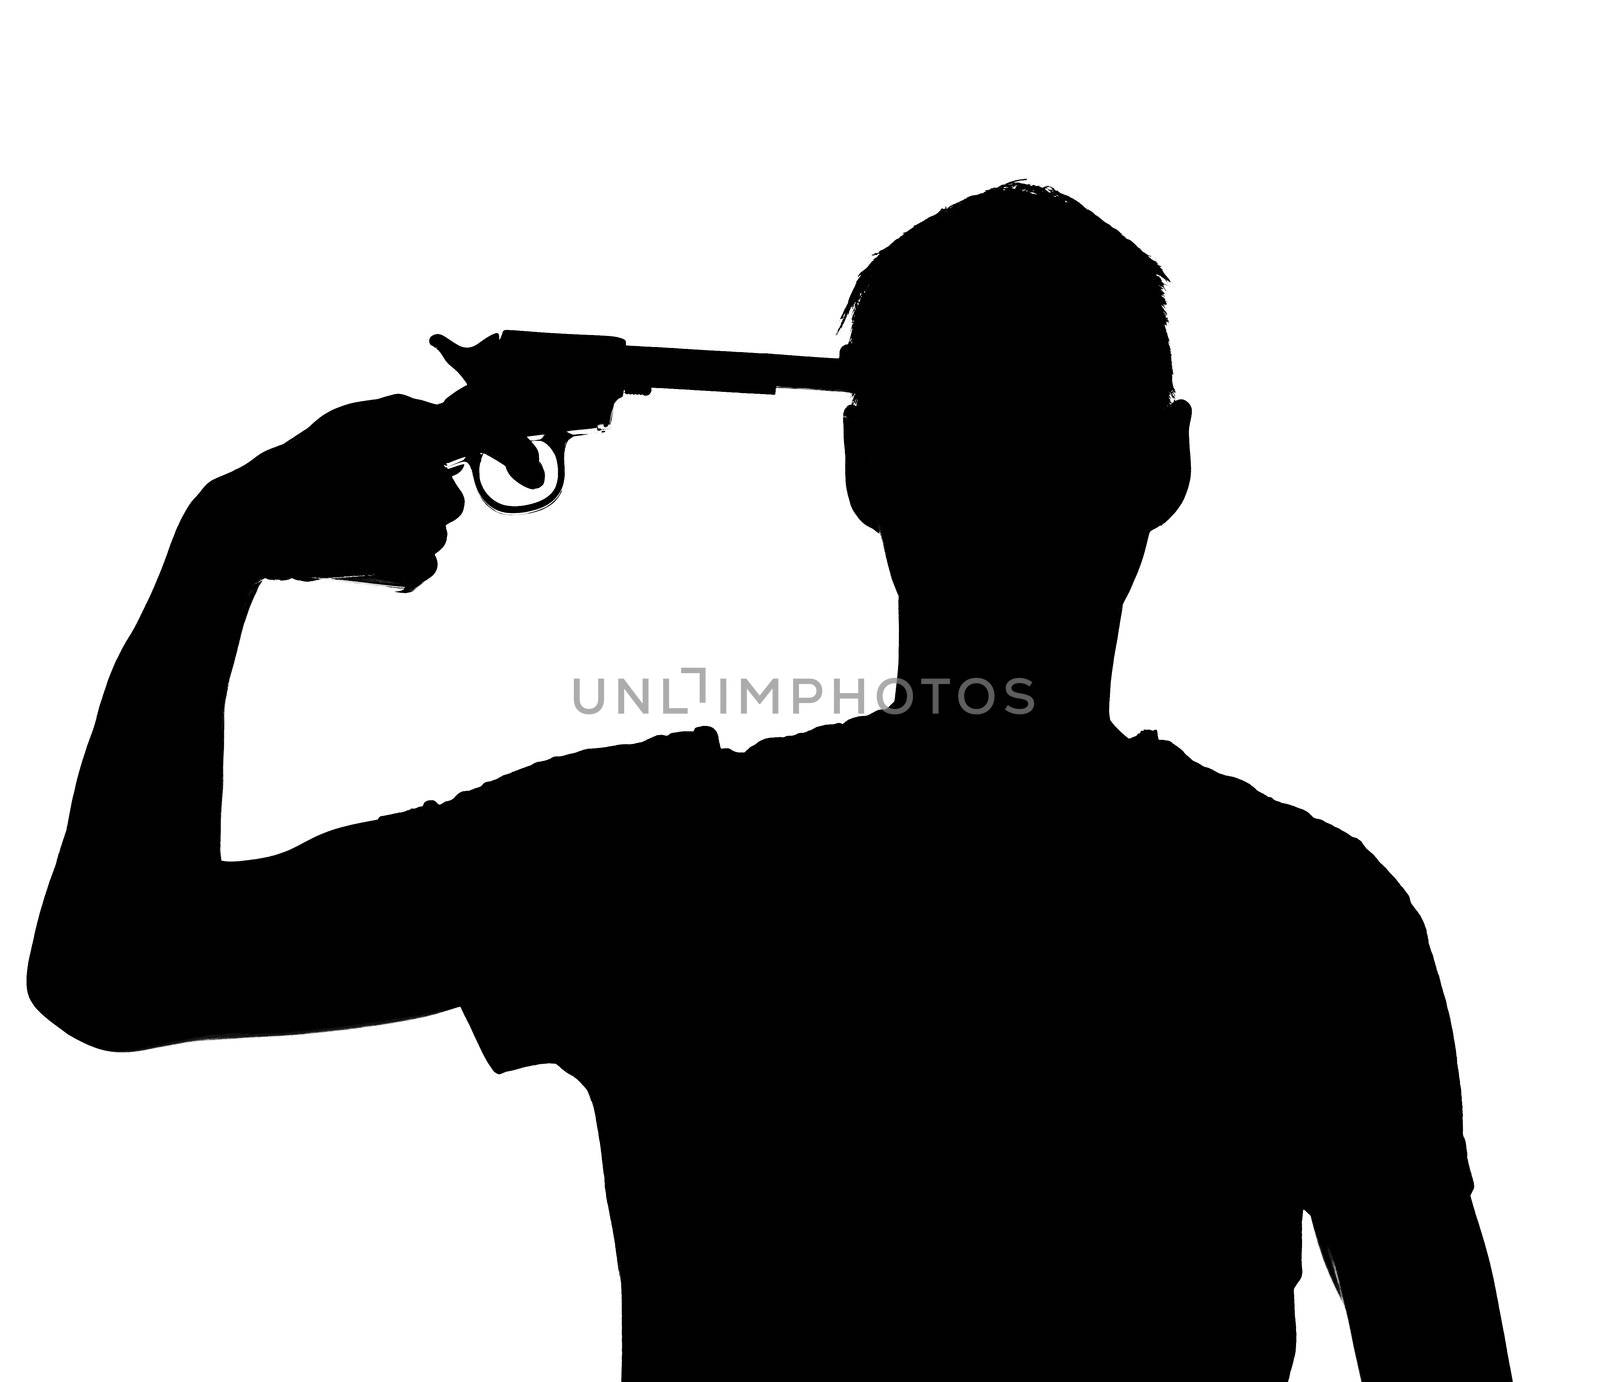 Silhouette of a man with a gun against his head